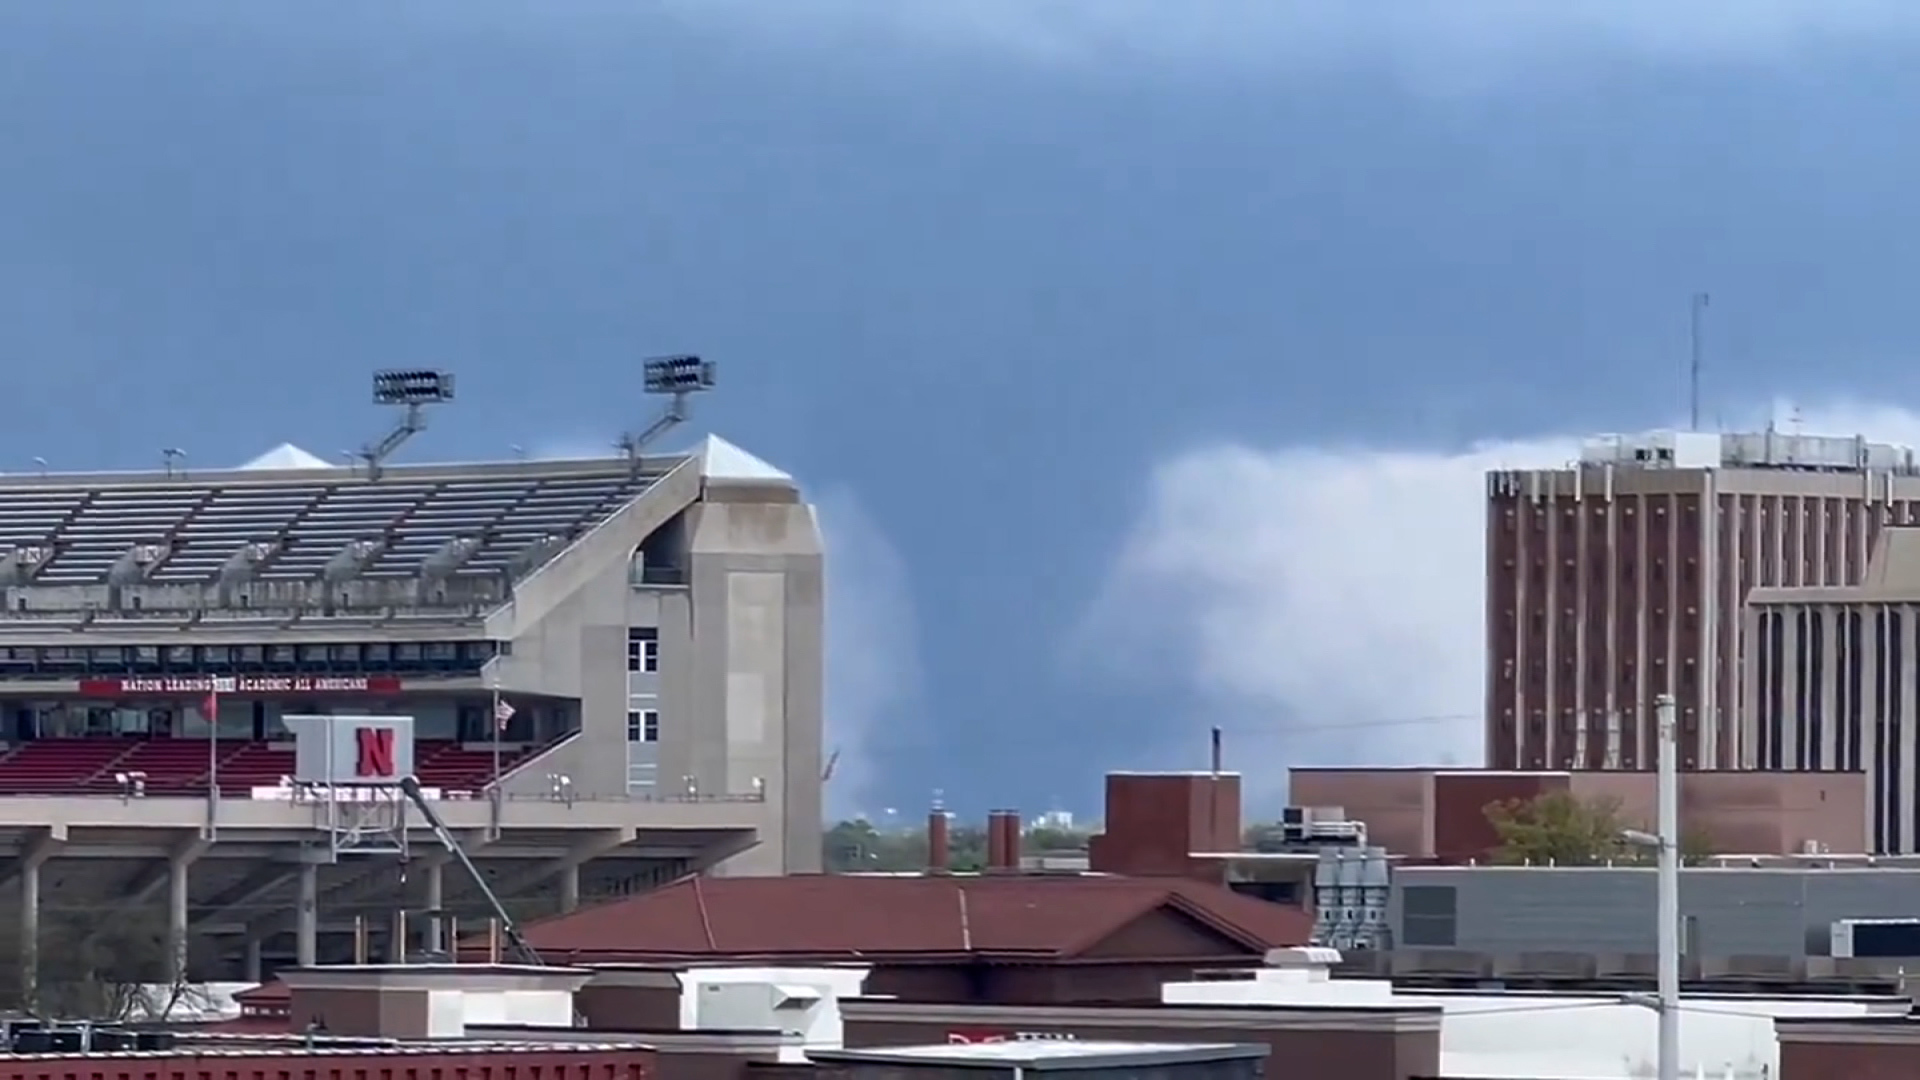 Potente tornado arrasa Nebraska, el servicio meteorológico advierte sobre daños “catastróficos”